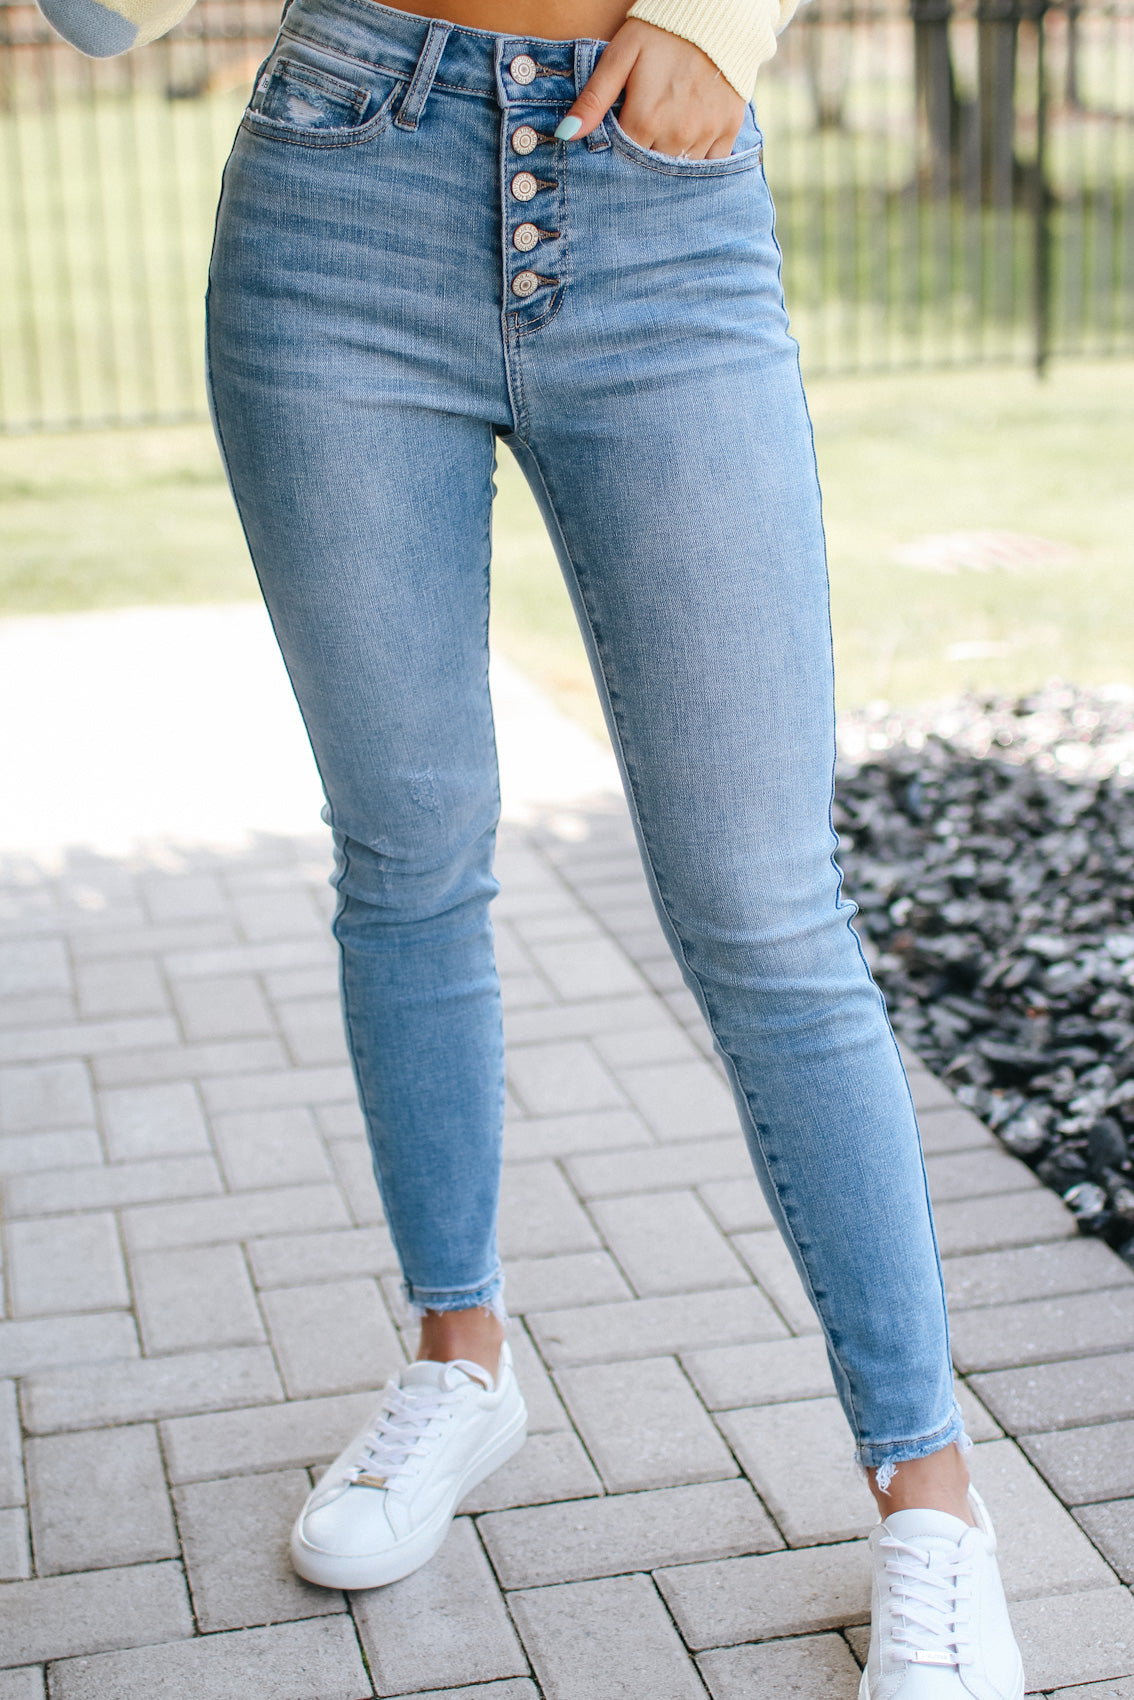 Women's Mid Rise Skinny Jane Jeans - Mott & Bow